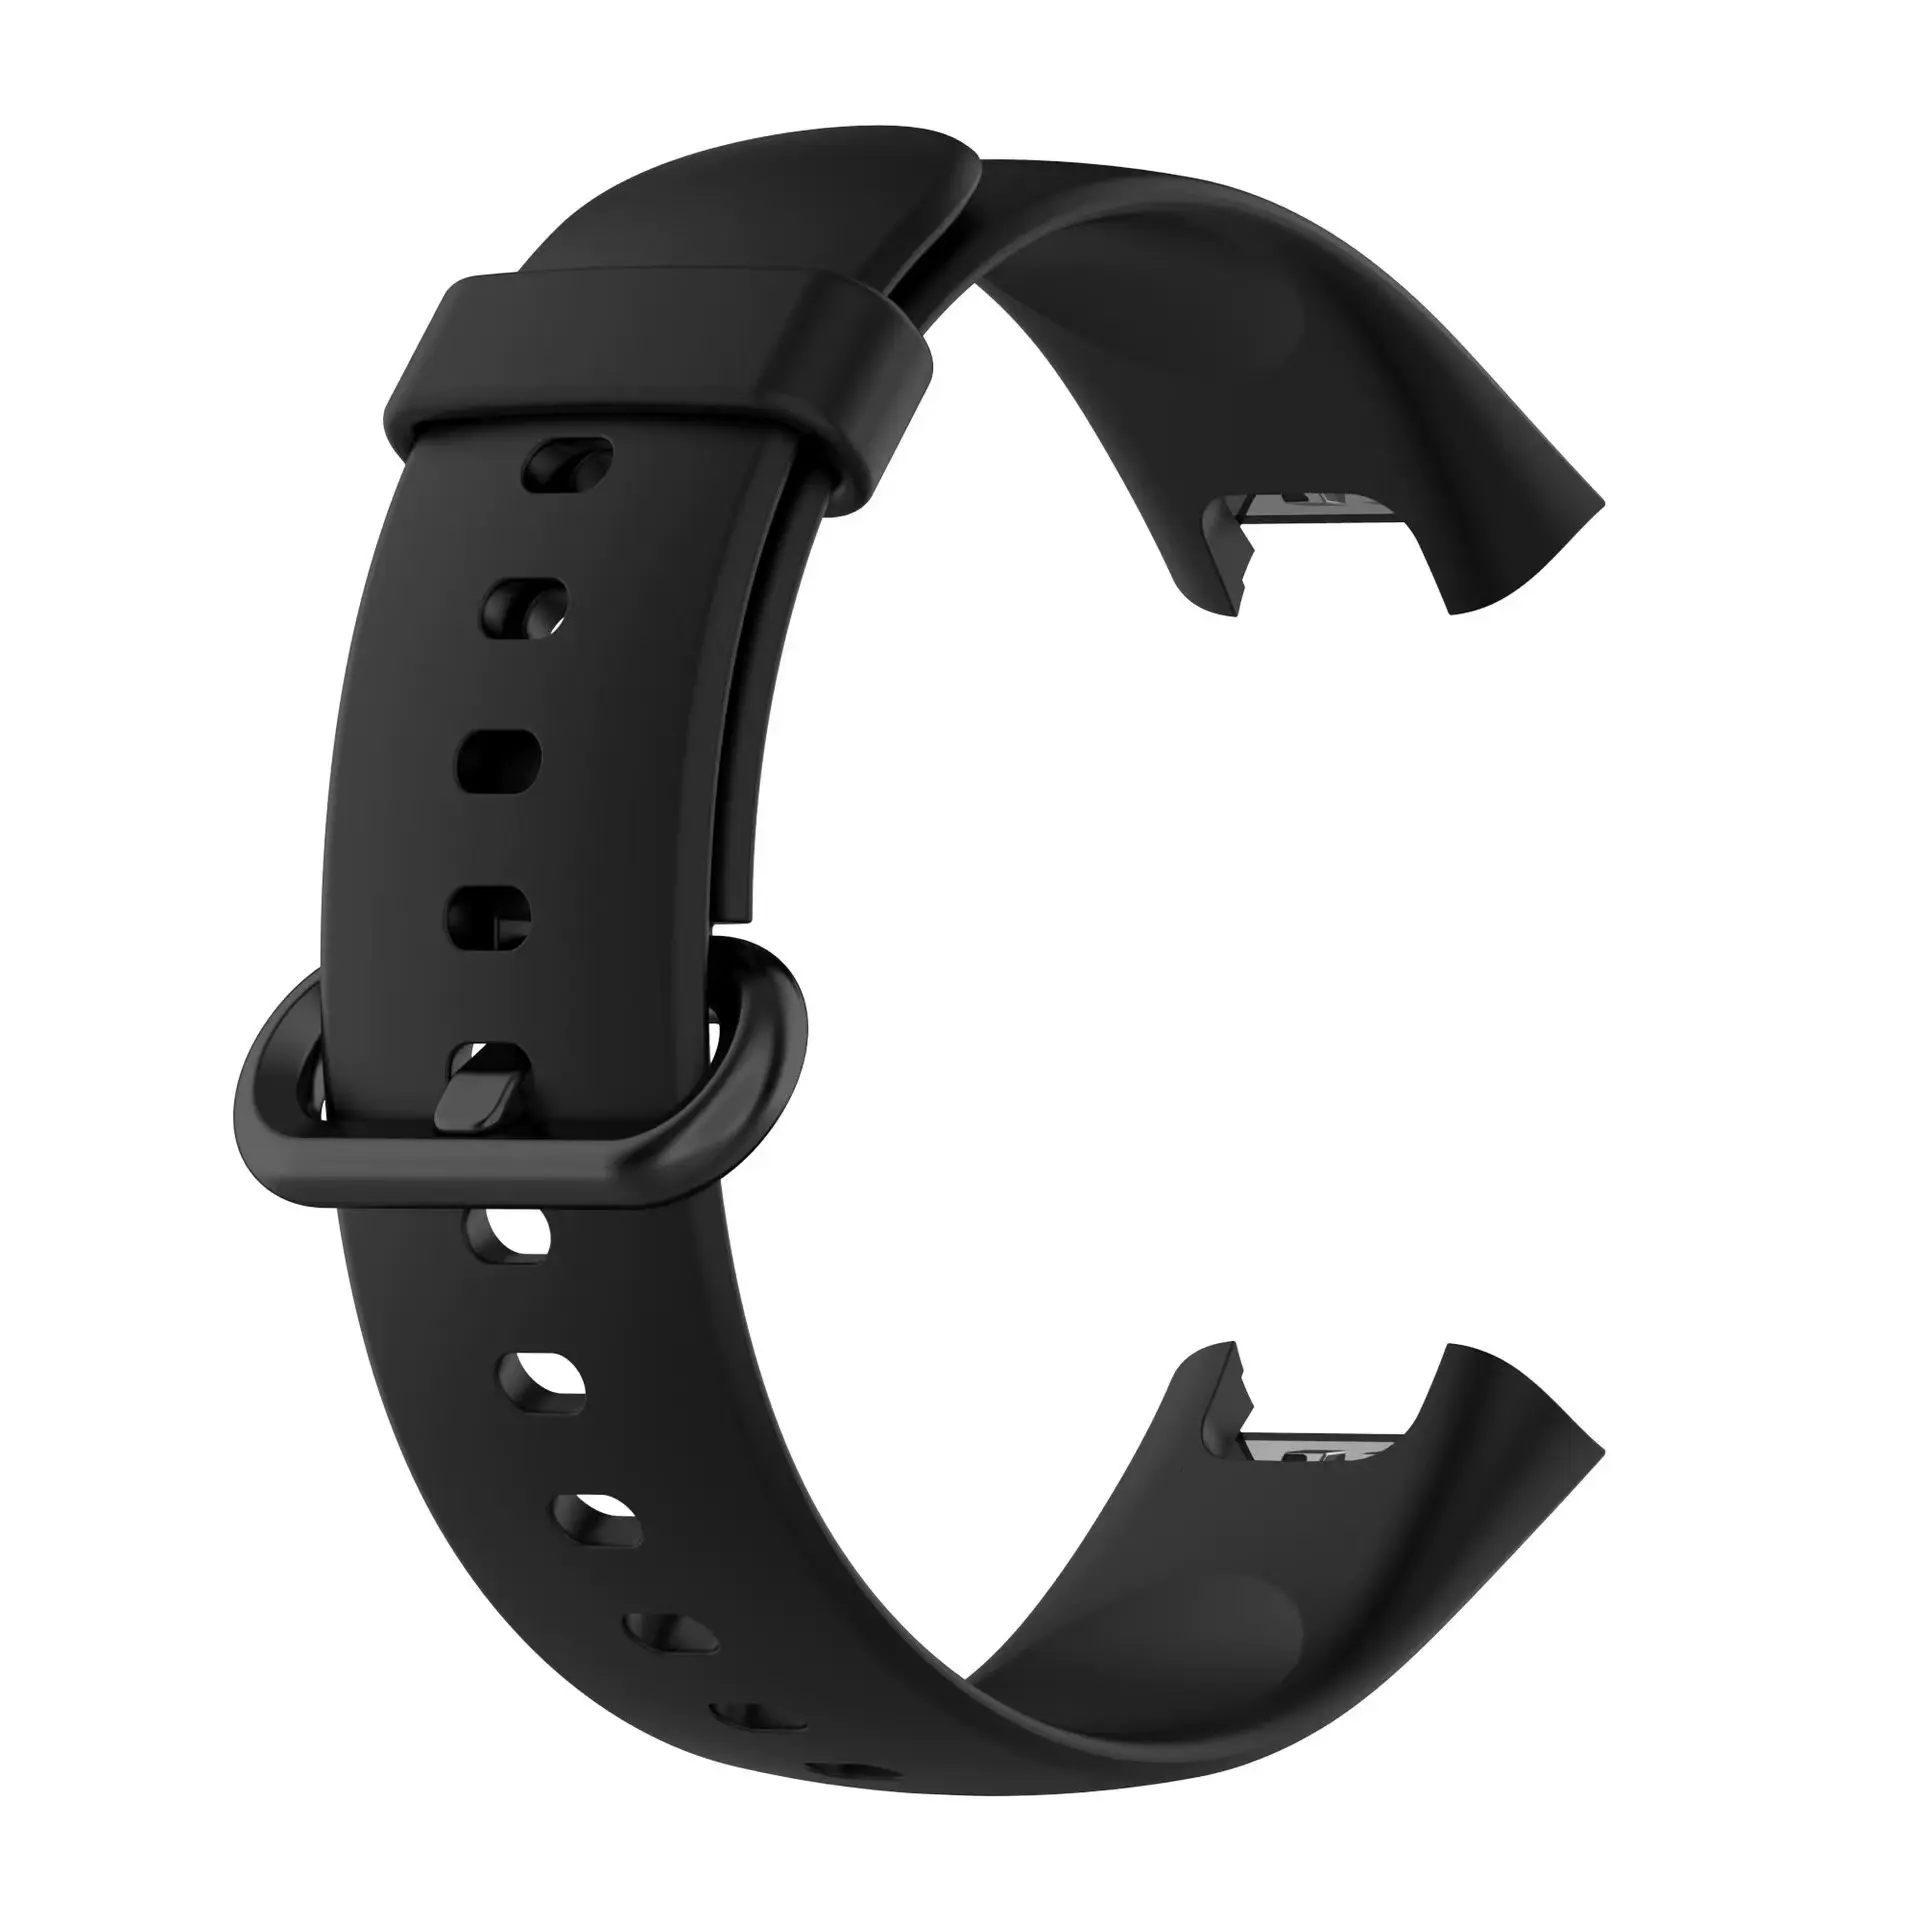 Nuovo cinturino in Silicone per orologio intelligente di ricambio per Xiaomi Mi Watch 2 Lite/Redmi Watch 2 Lite cinturino sportivo moda nero rosso